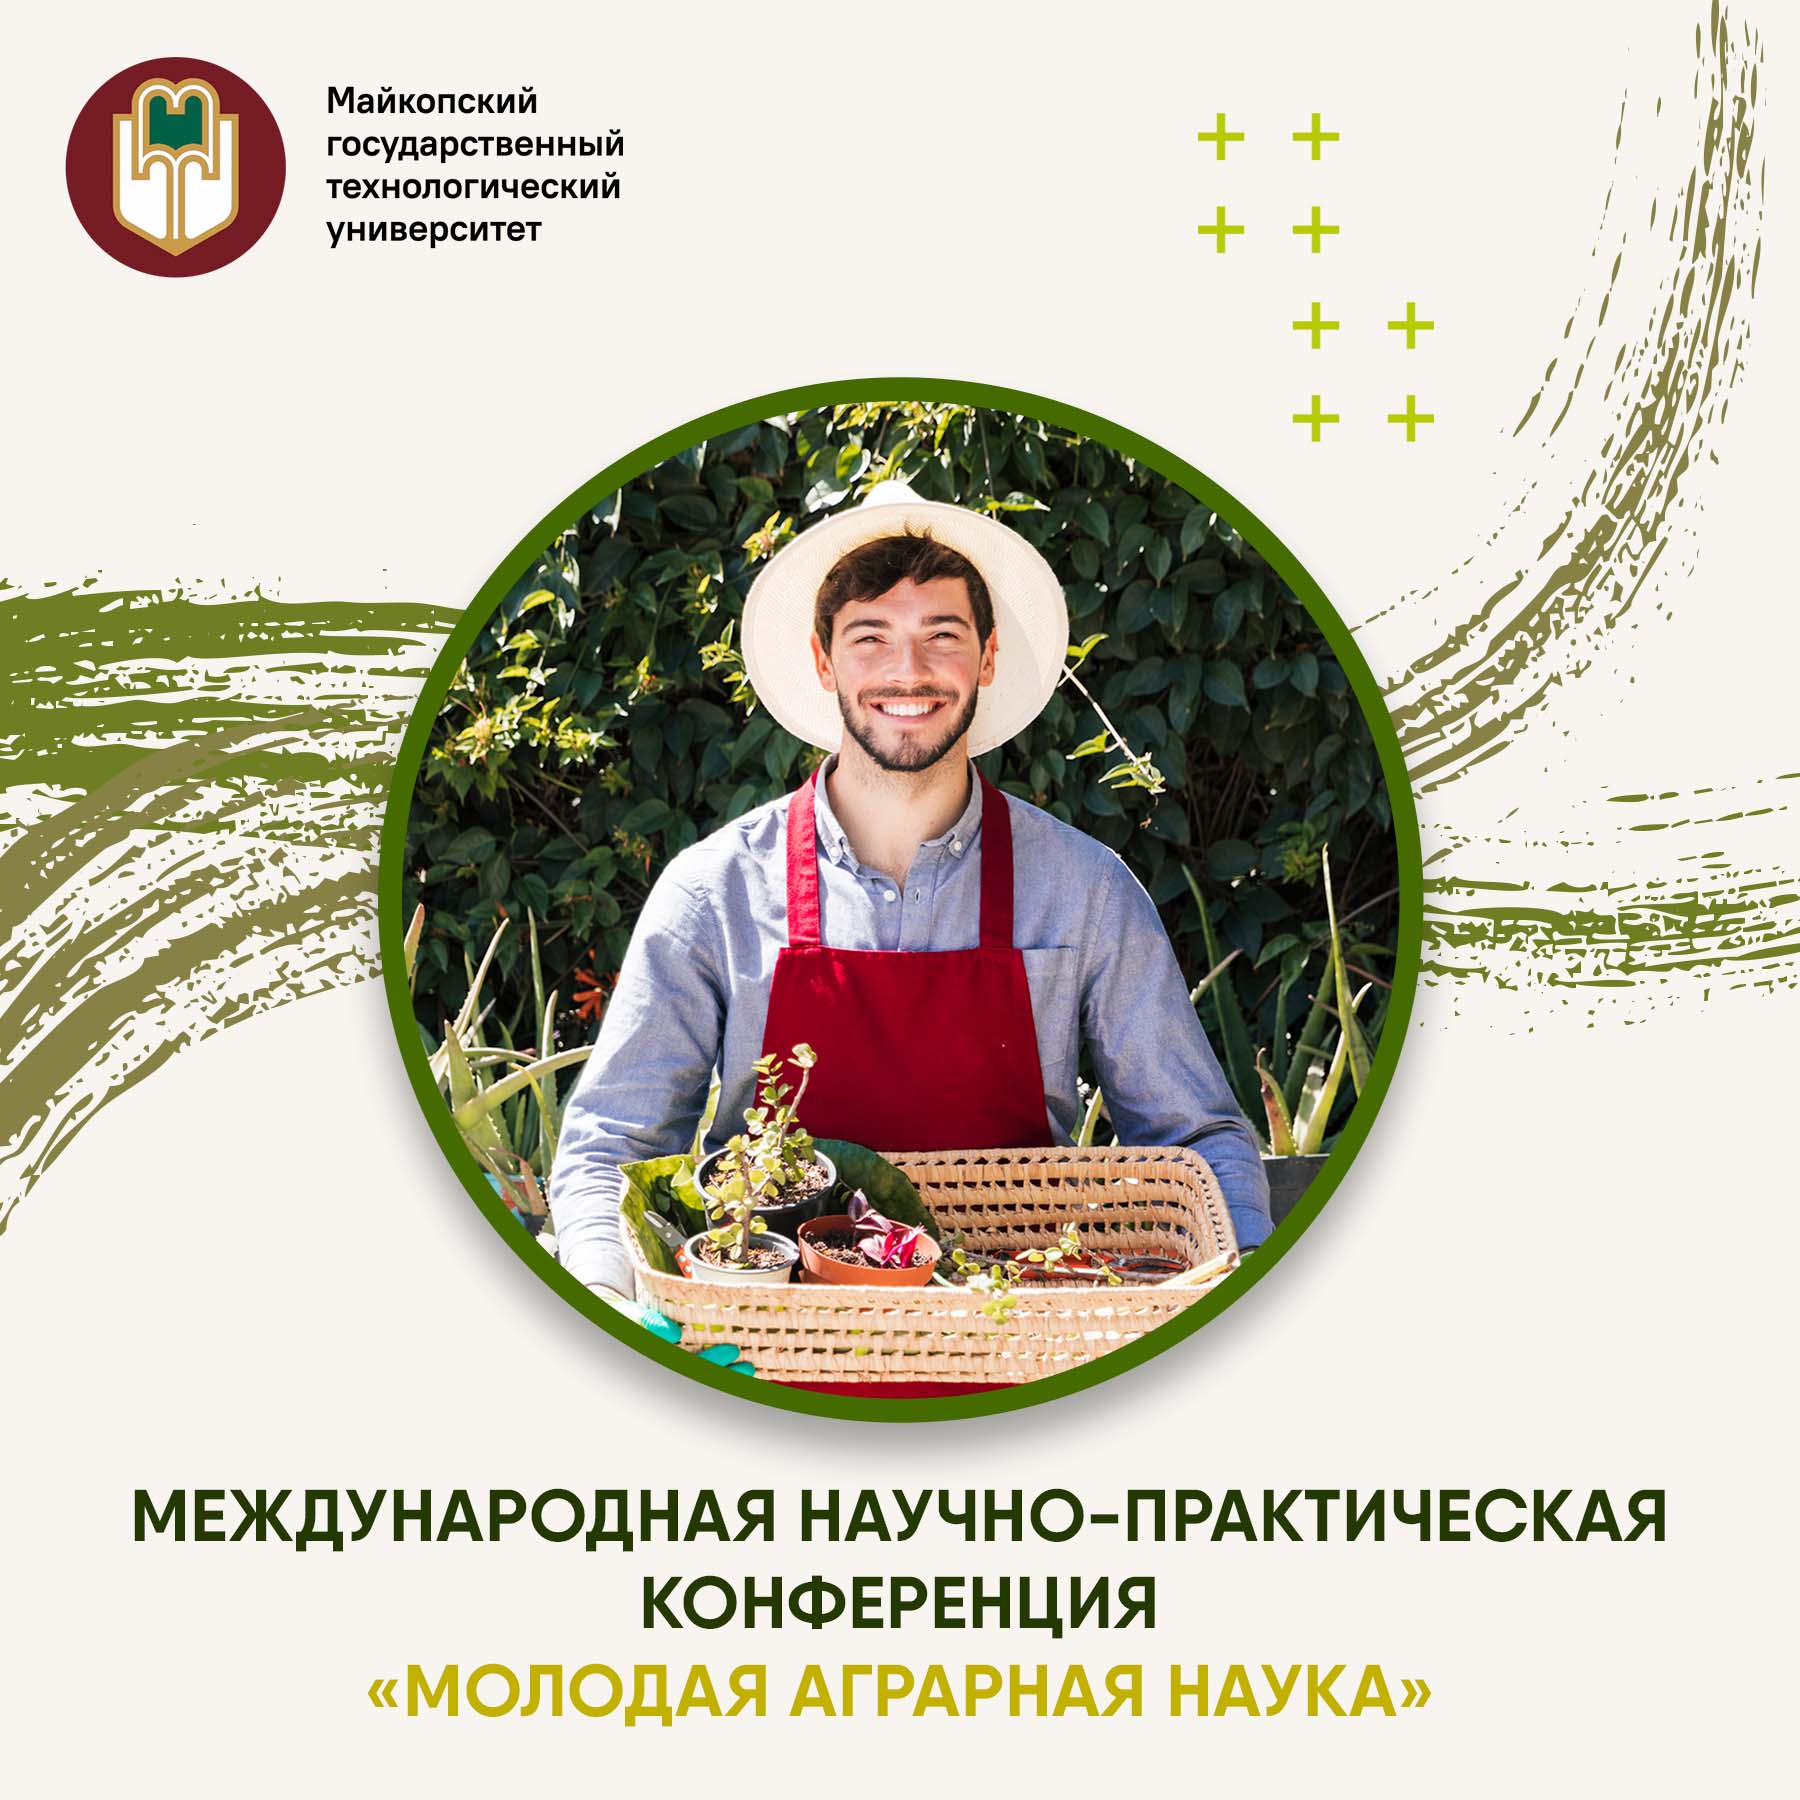 Международная научно-практическая конференция студентов и аспирантов «Молодая аграрная наука»